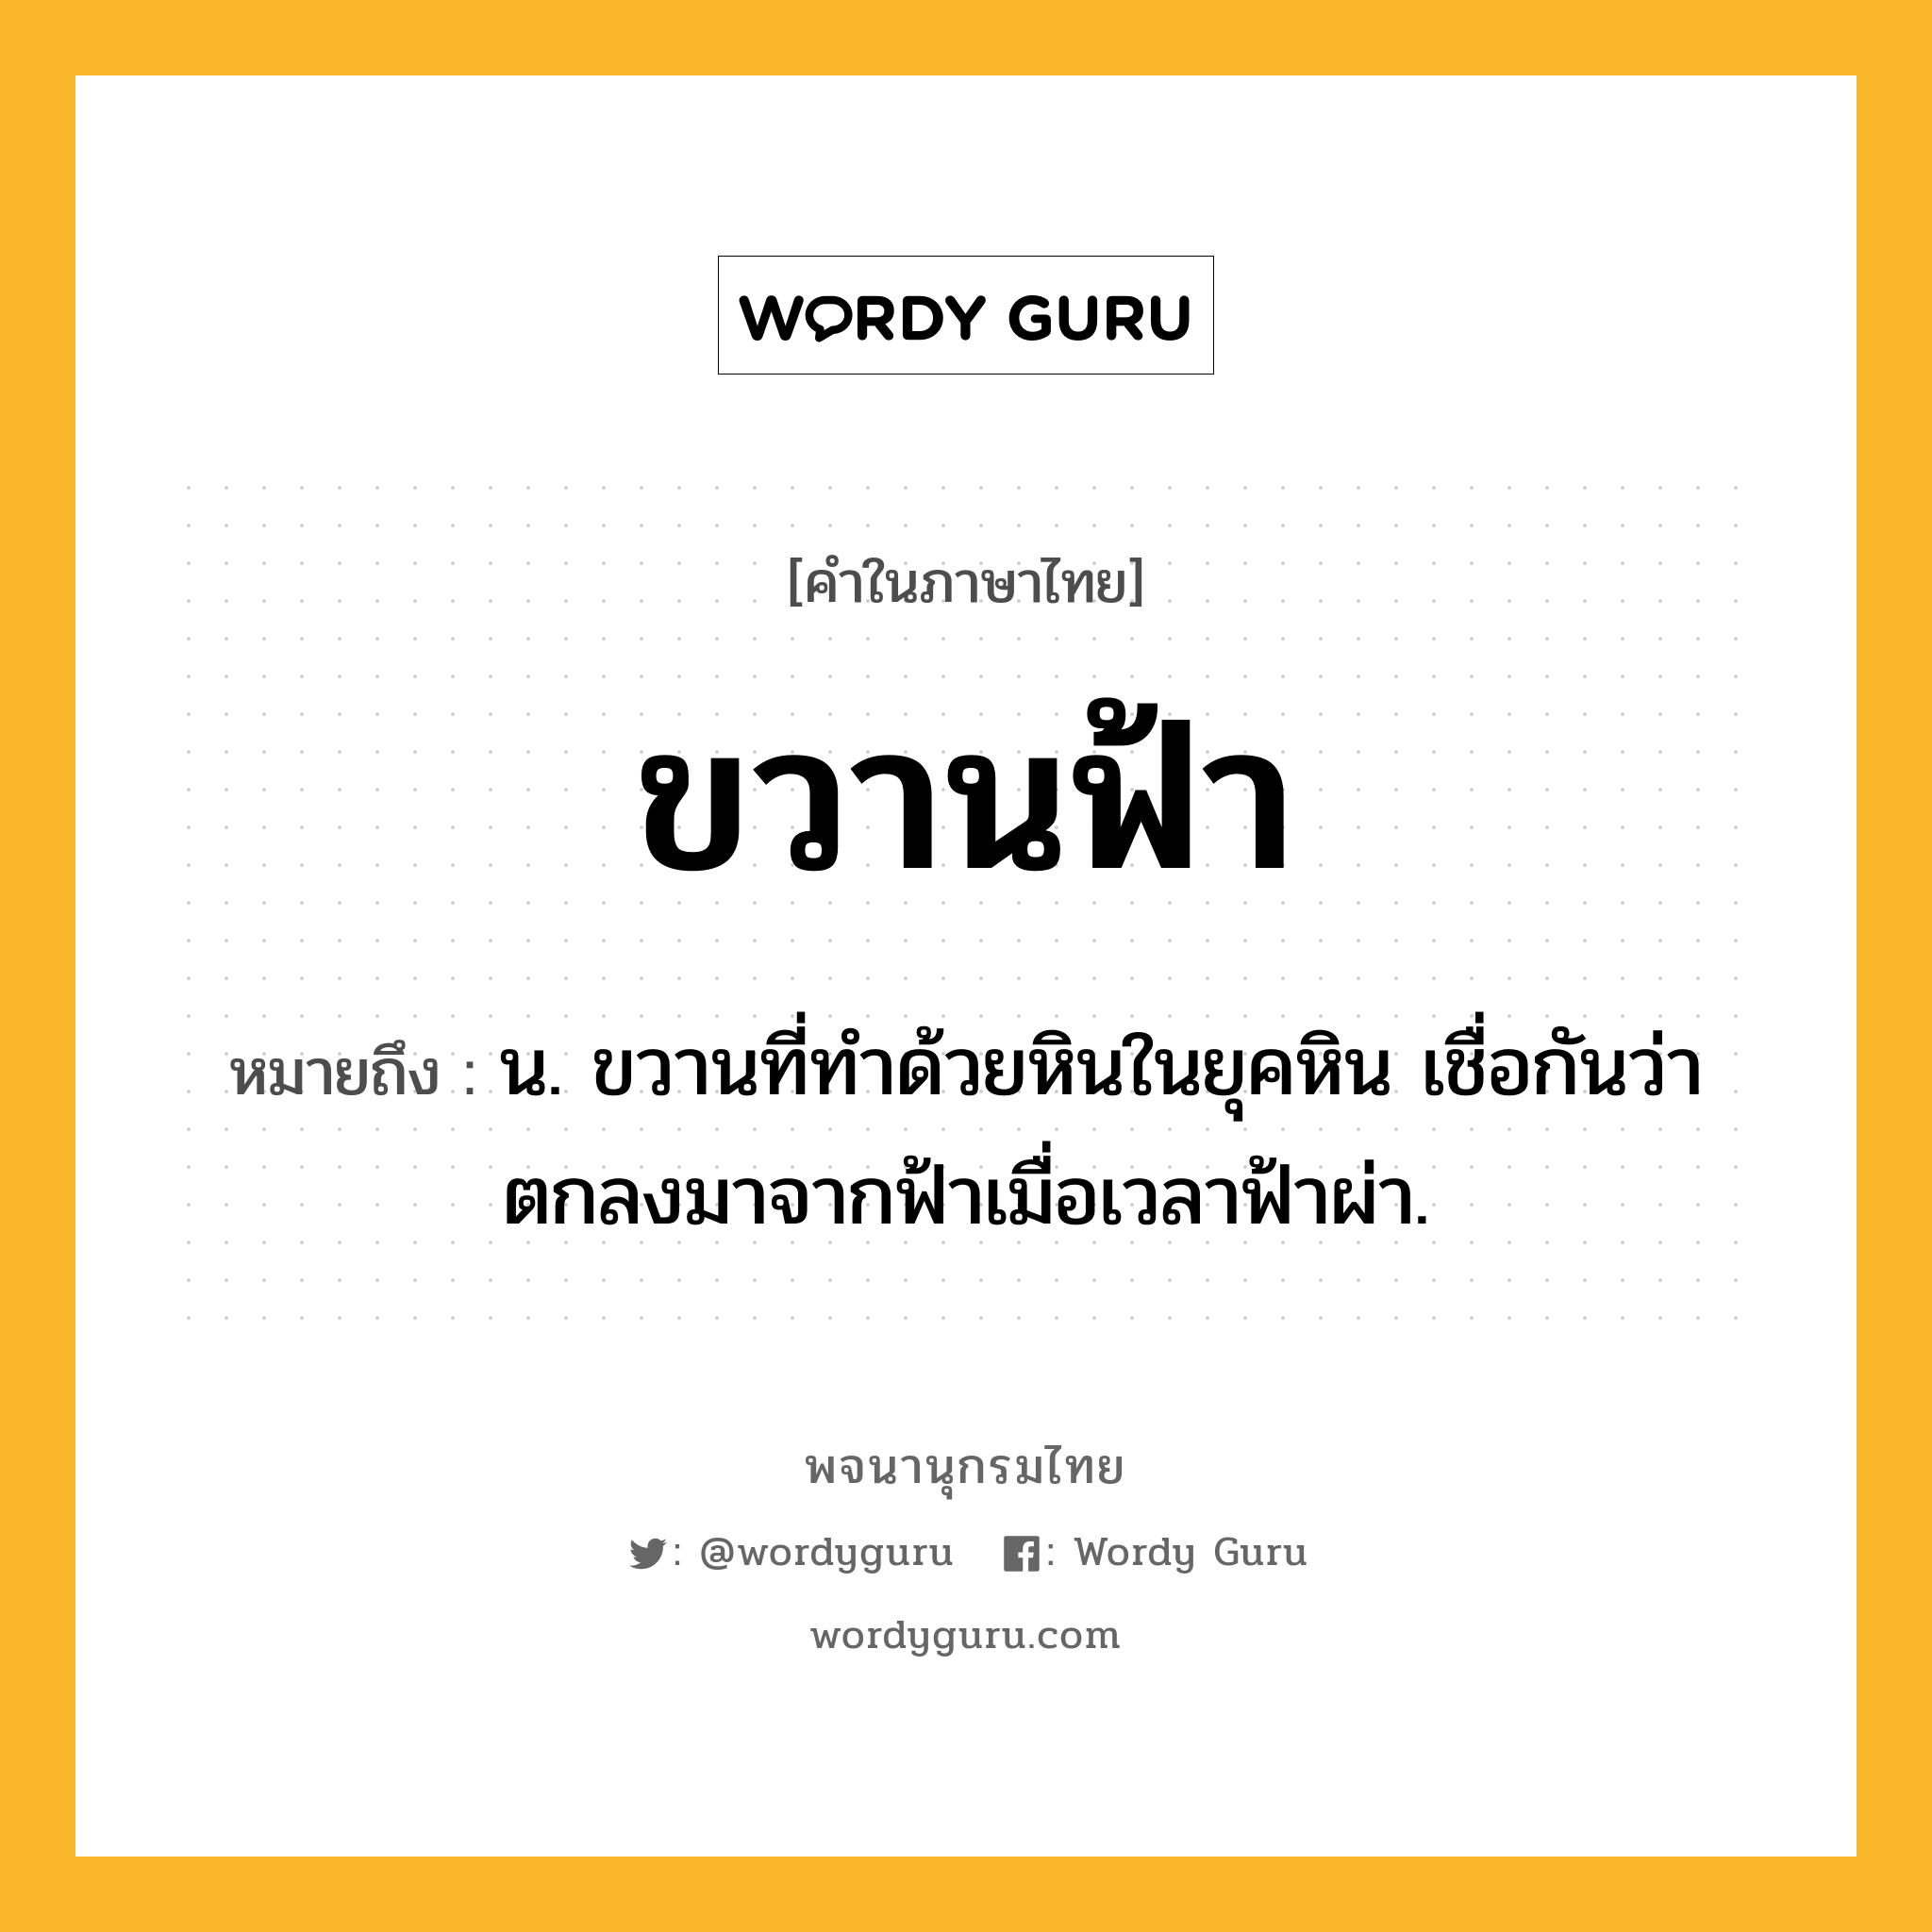 ขวานฟ้า ความหมาย หมายถึงอะไร?, คำในภาษาไทย ขวานฟ้า หมายถึง น. ขวานที่ทําด้วยหินในยุคหิน เชื่อกันว่าตกลงมาจากฟ้าเมื่อเวลาฟ้าผ่า.